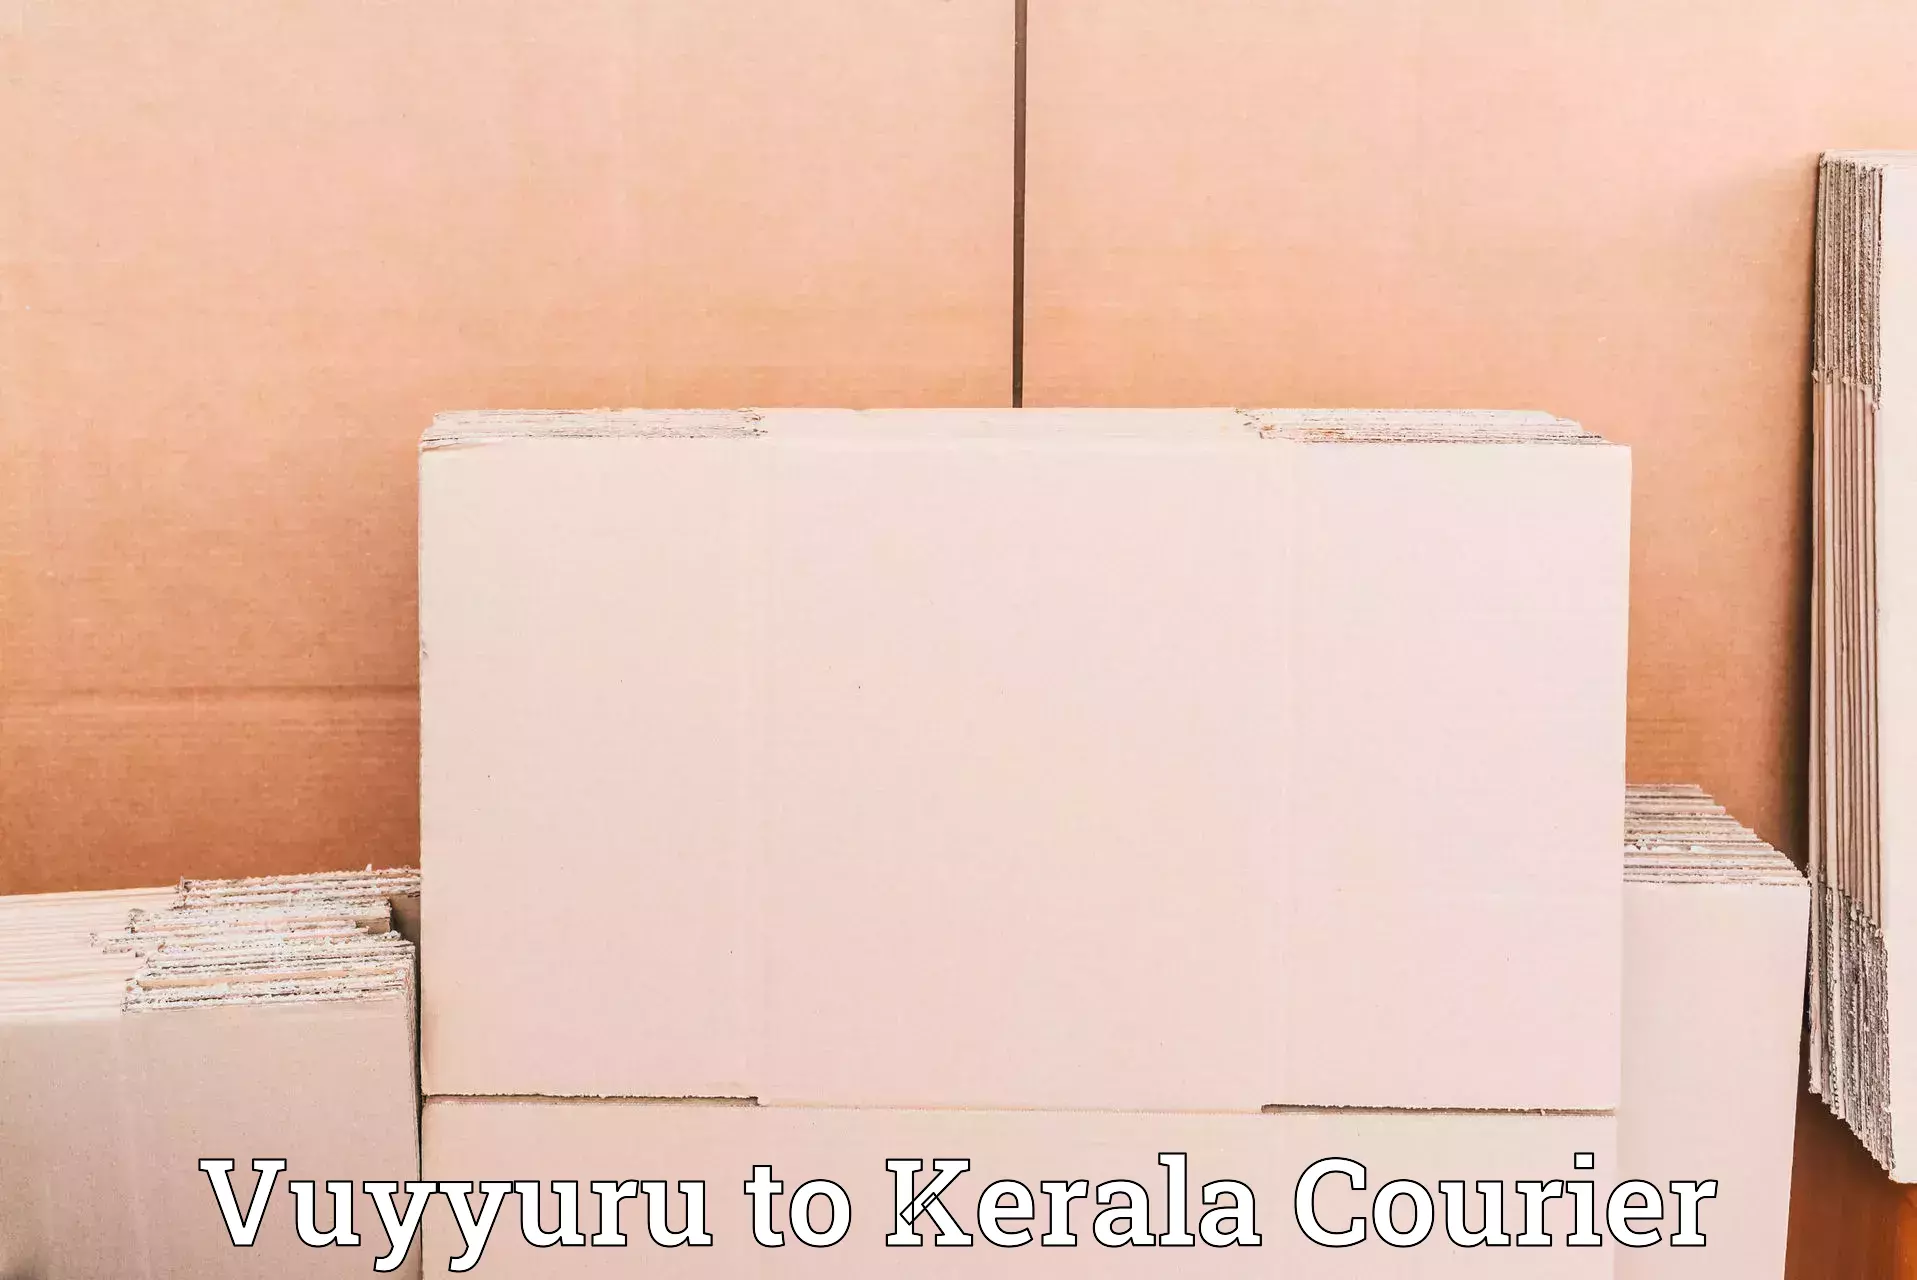 Discounted shipping Vuyyuru to Cochin Port Kochi